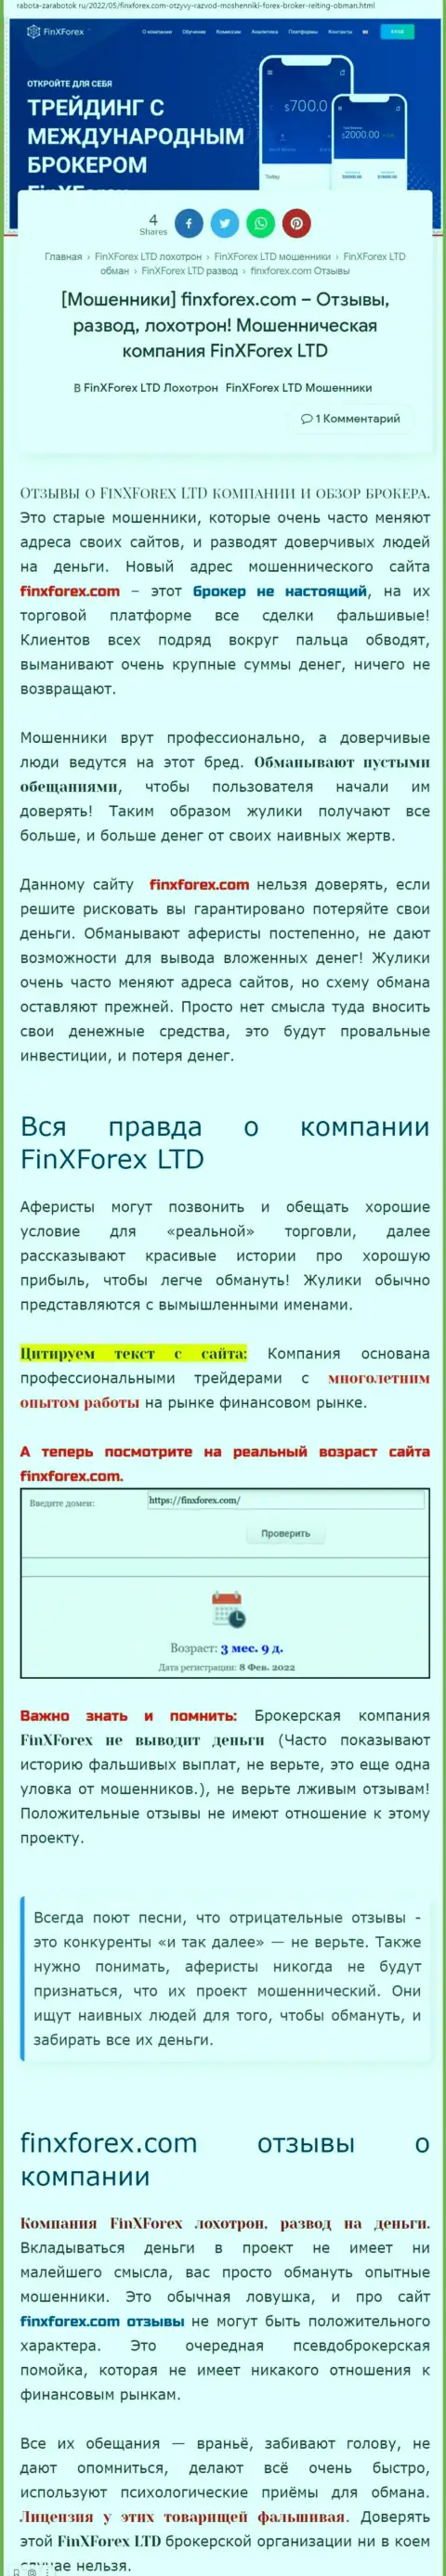 Автор обзорной статьи об FinXForex утверждает, что в компании FinXForex жульничают